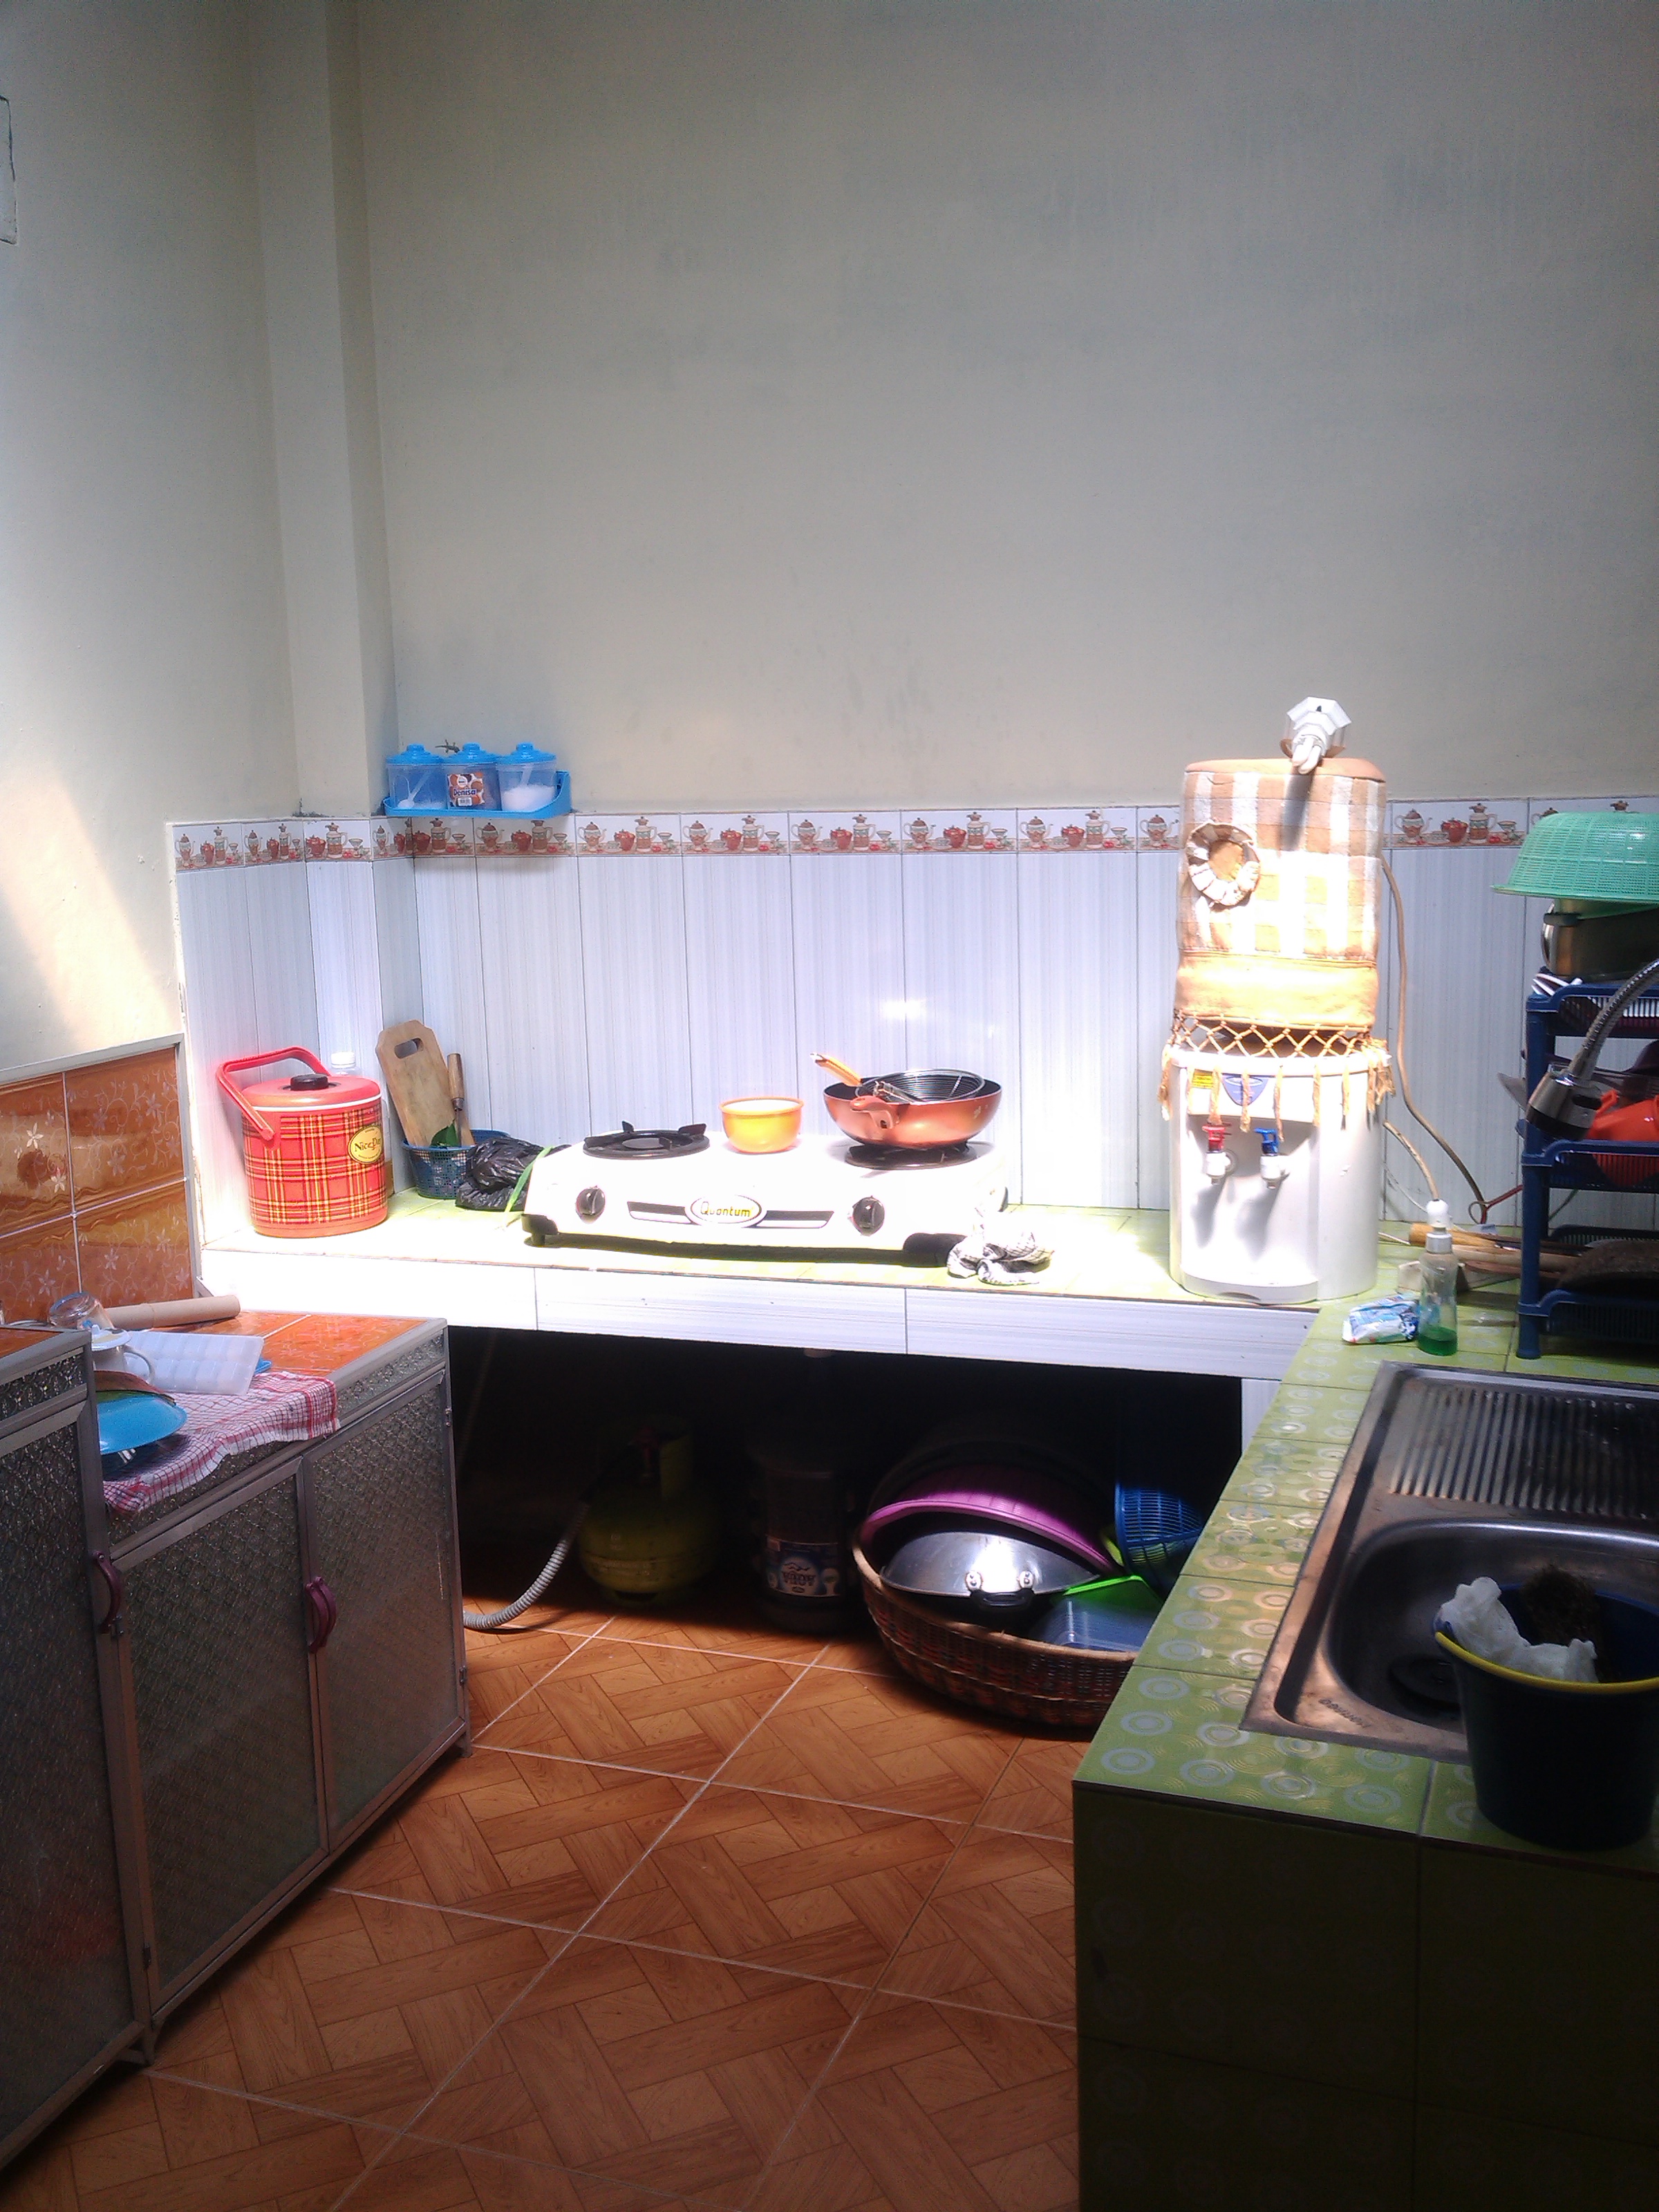 Renovasi dapur sederhana adegondang